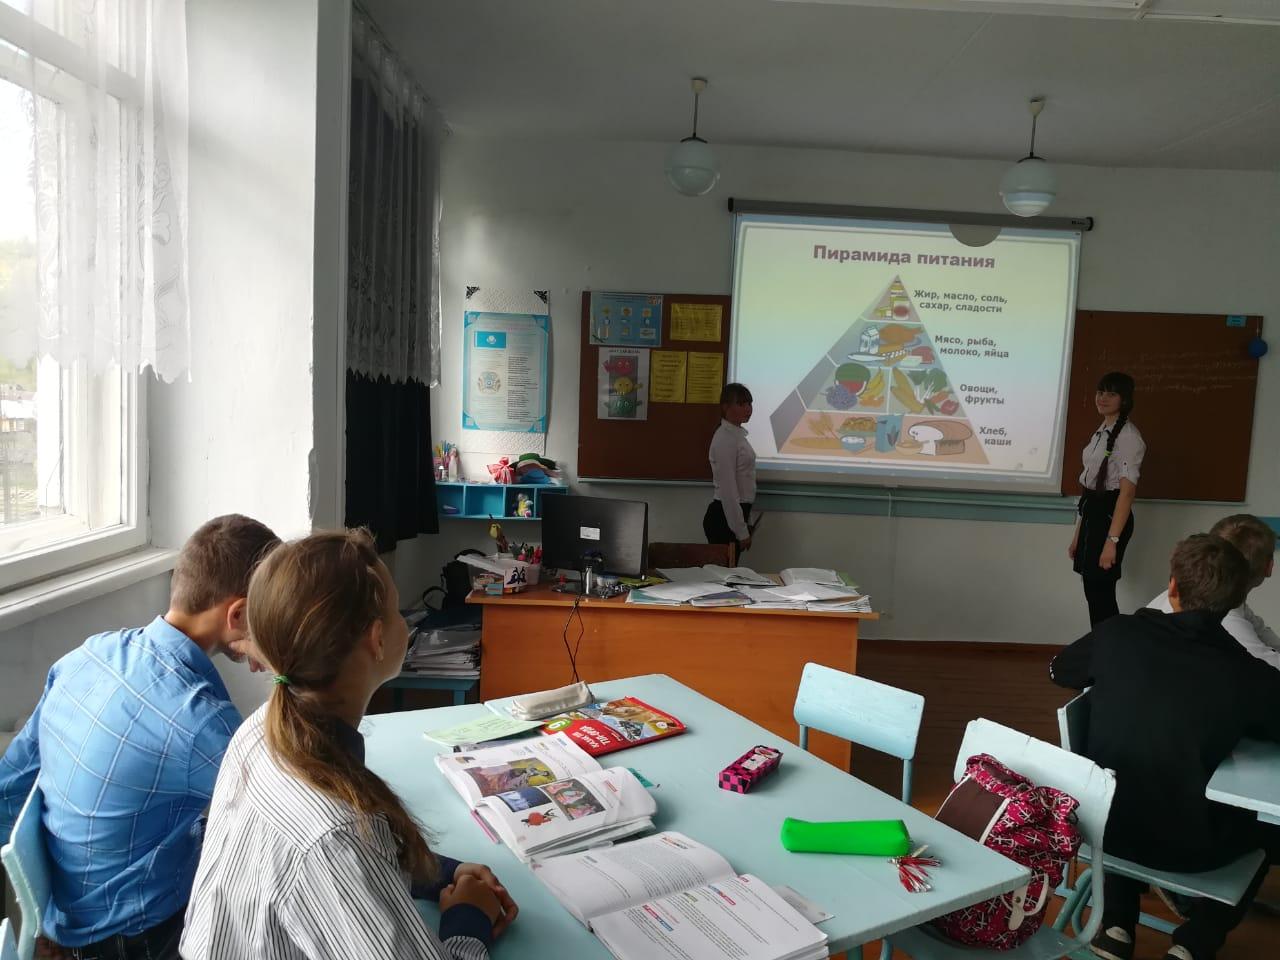 В рамках реализации партийного проекта "Школьные столовые" 15.05.2019, в 9 классе был проведен классный час на тему: "Секреты здорового питания"